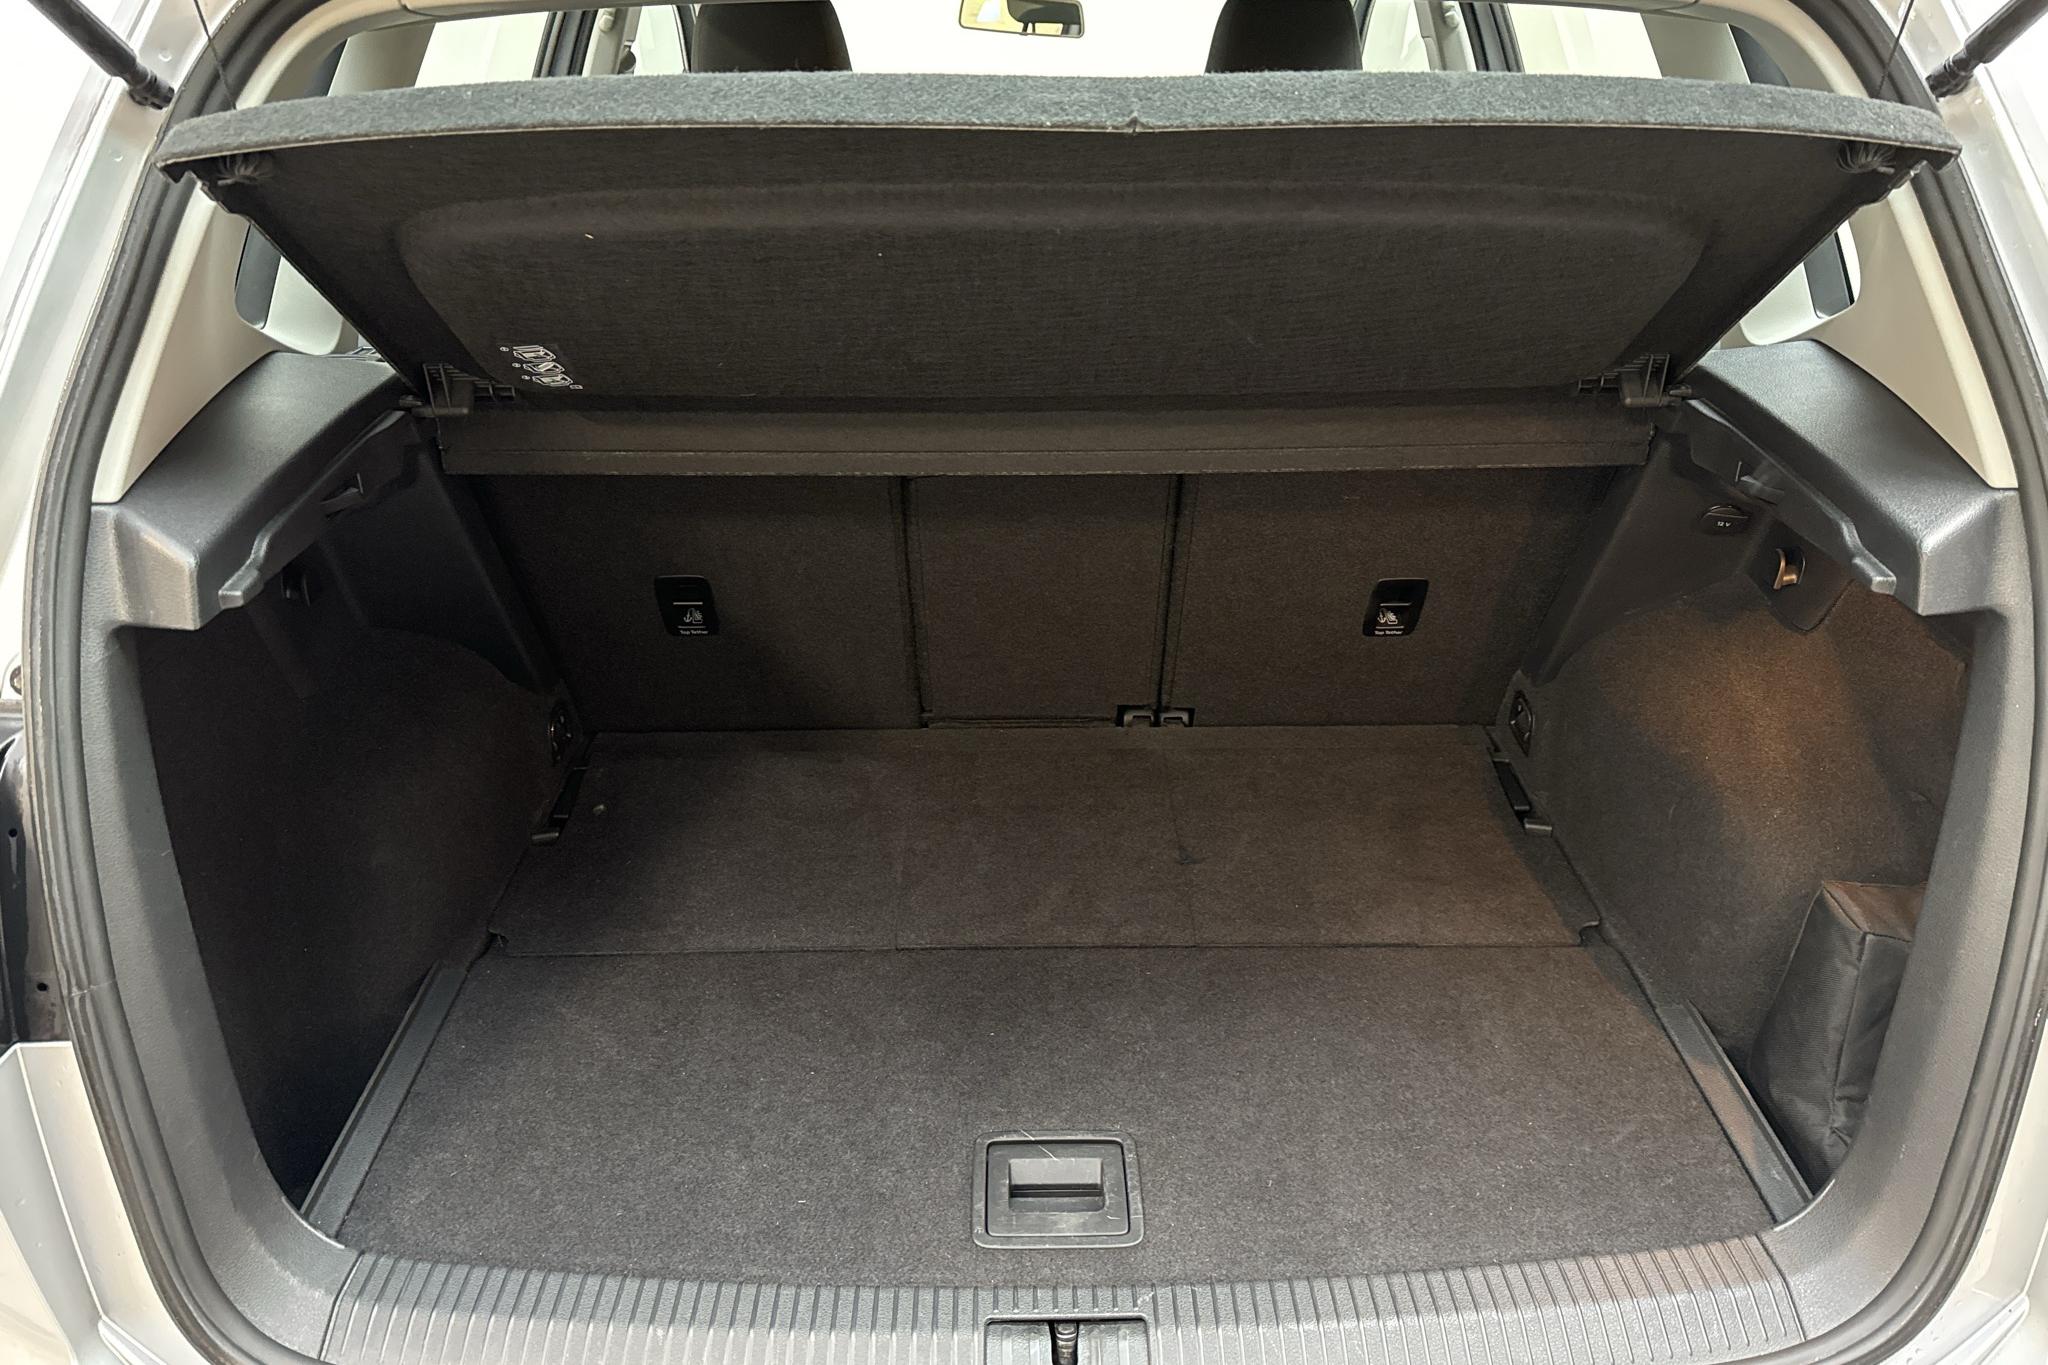 VW Golf VII 1.6 TDI BlueMotion Technology Sportsvan (110hk) - 170 790 km - Manual - silver - 2015